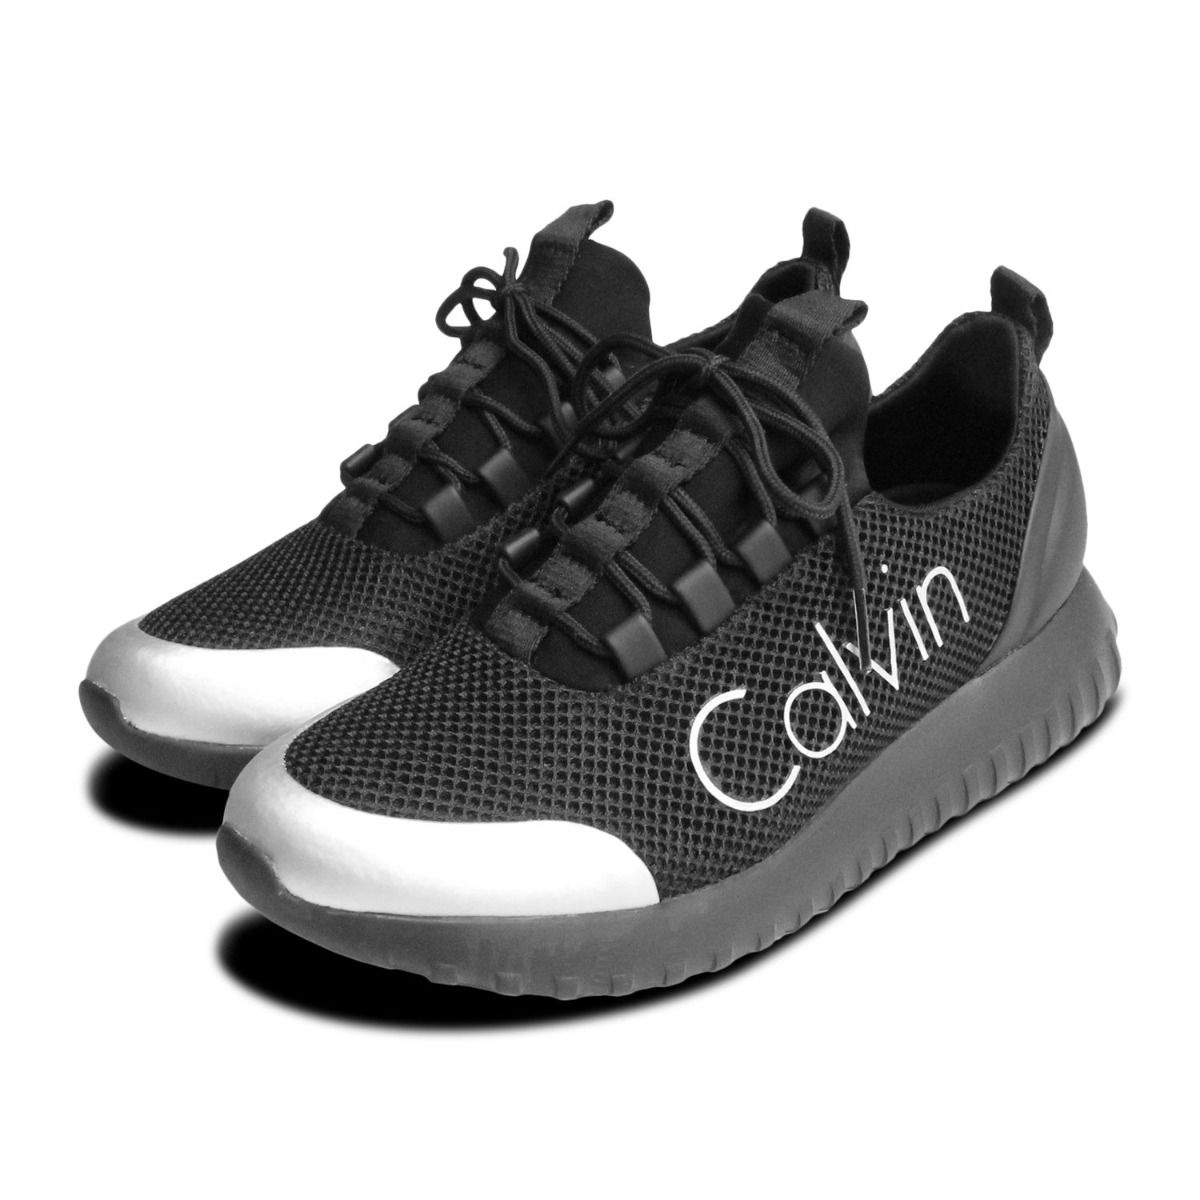 calvin klein womens tennis shoes